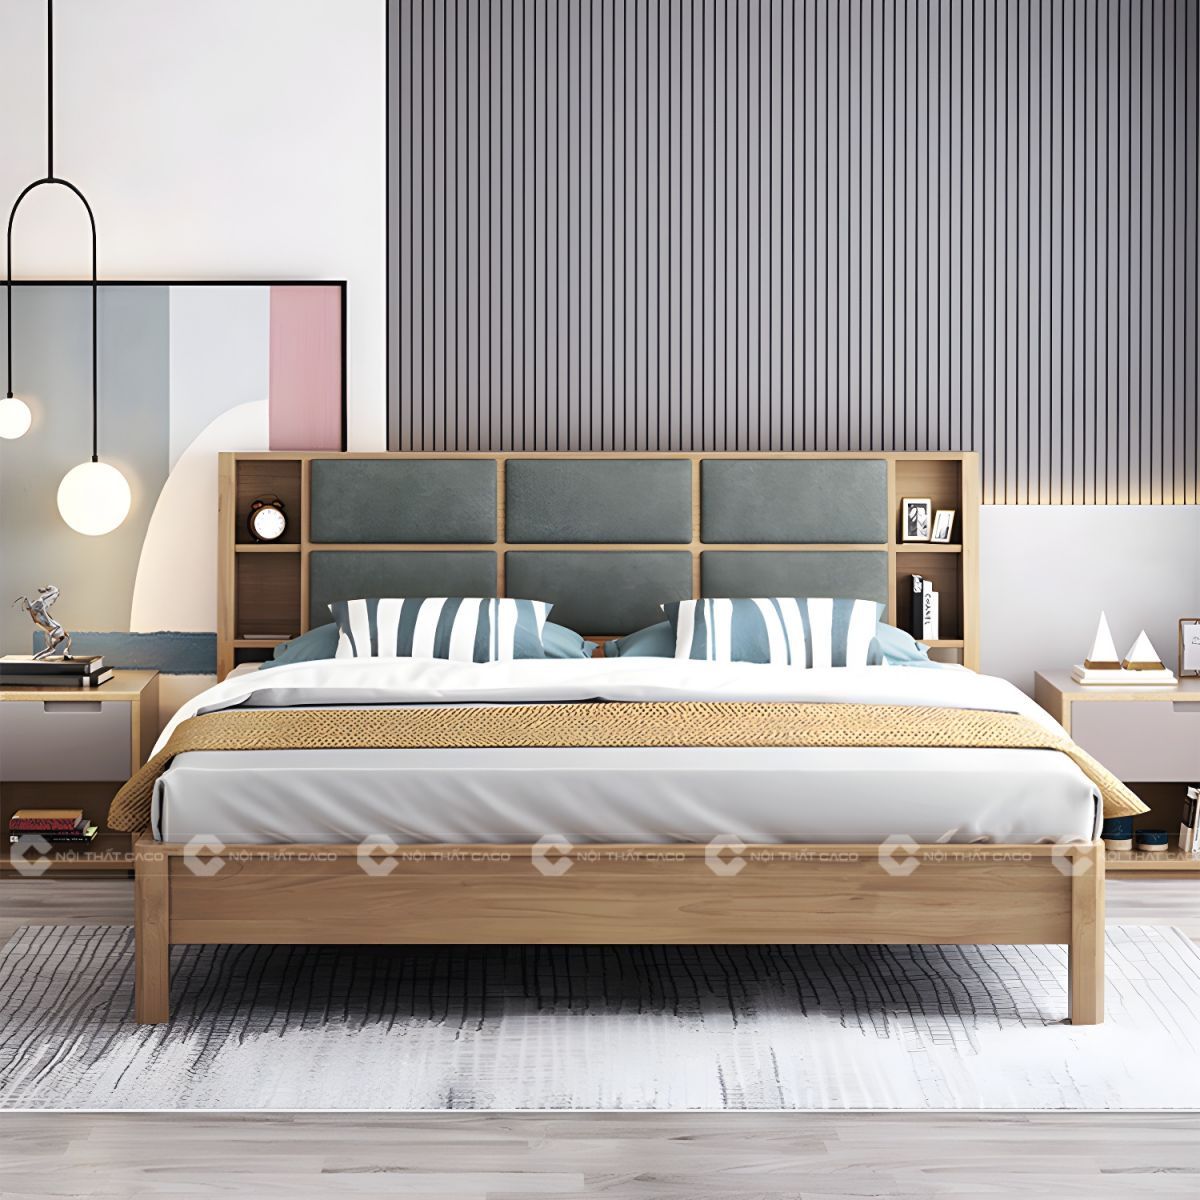 Giường ngủ gỗ tự nhiên bọc nệm đầu giường sang trọng